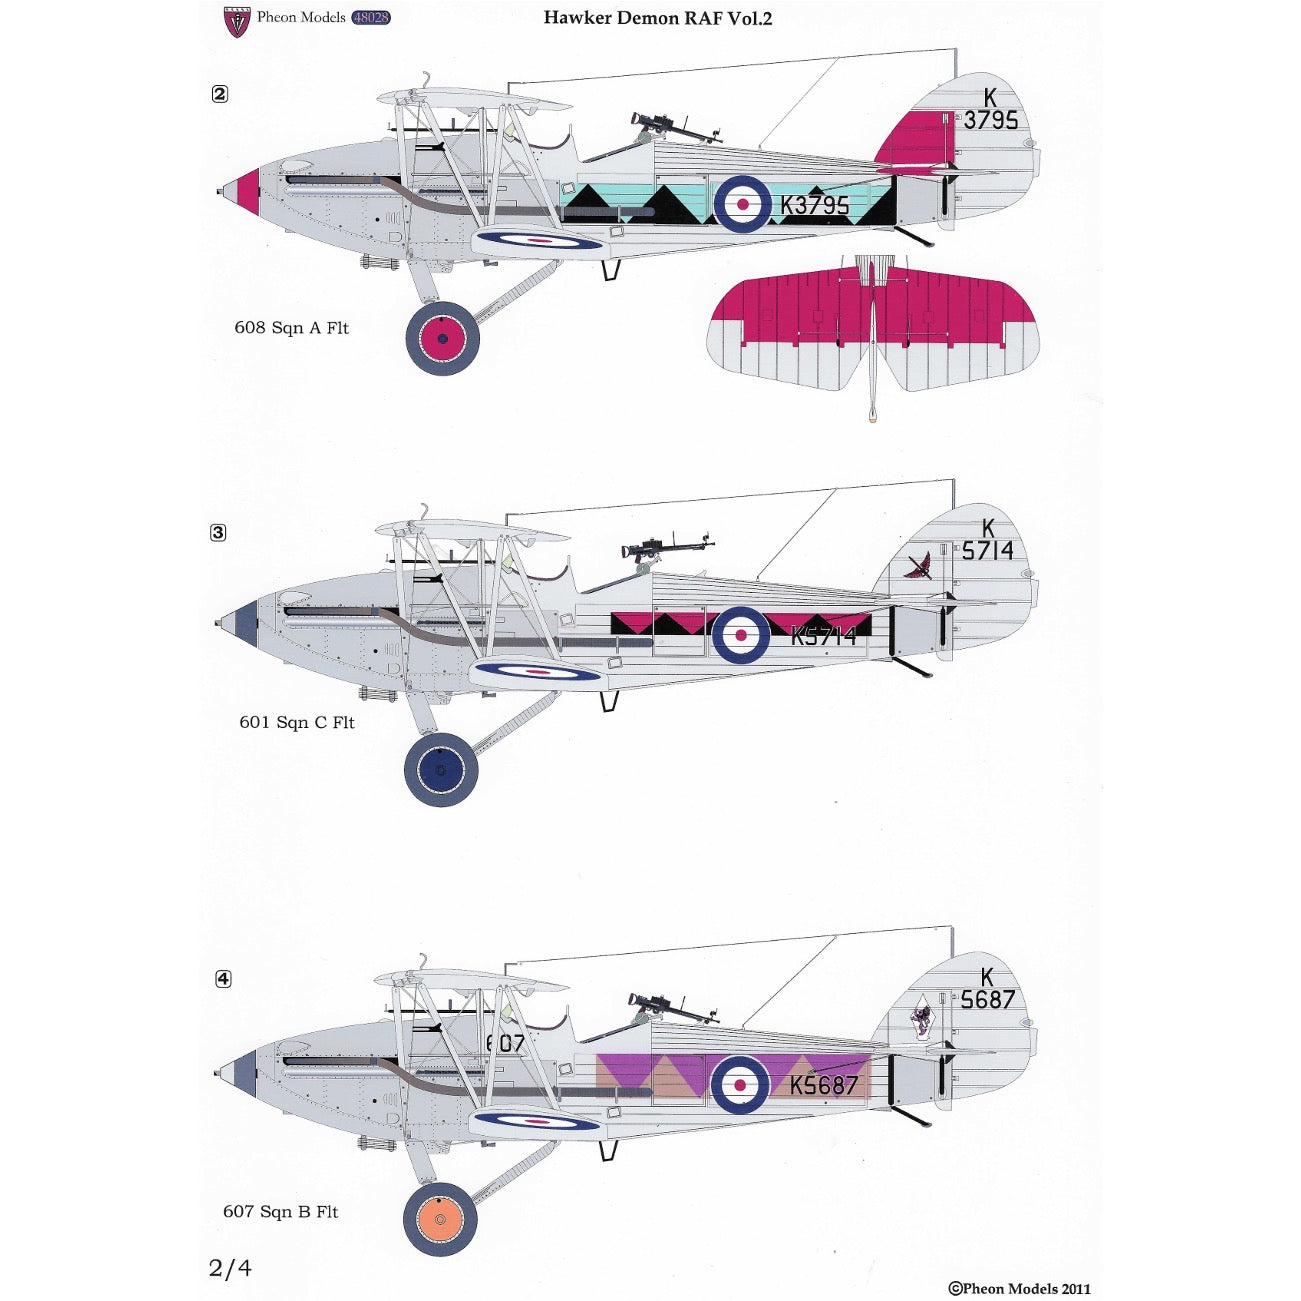 1/48 - Hawker Demon - Vol 2